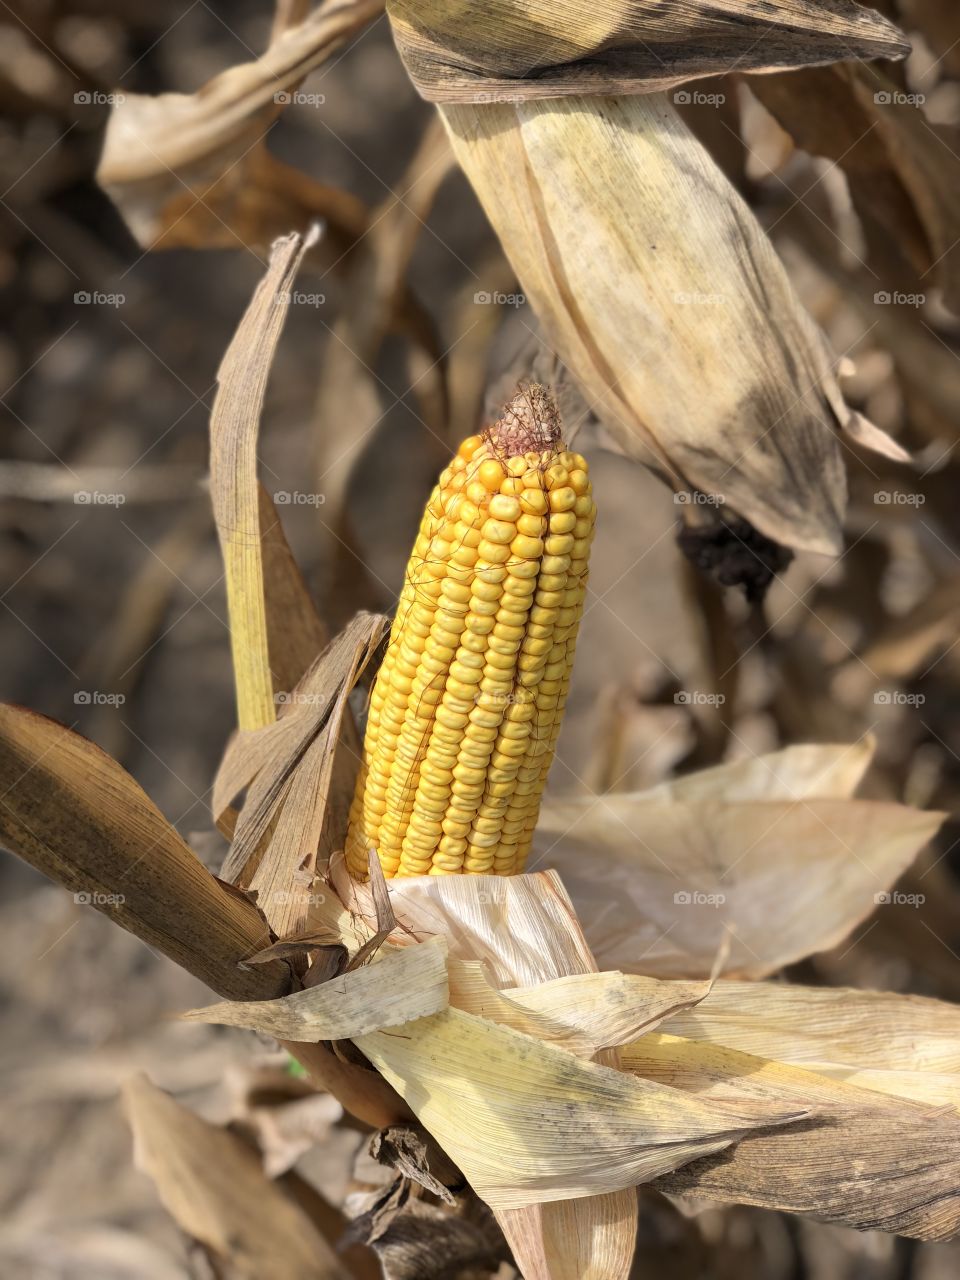 Louisiana Corn Crop